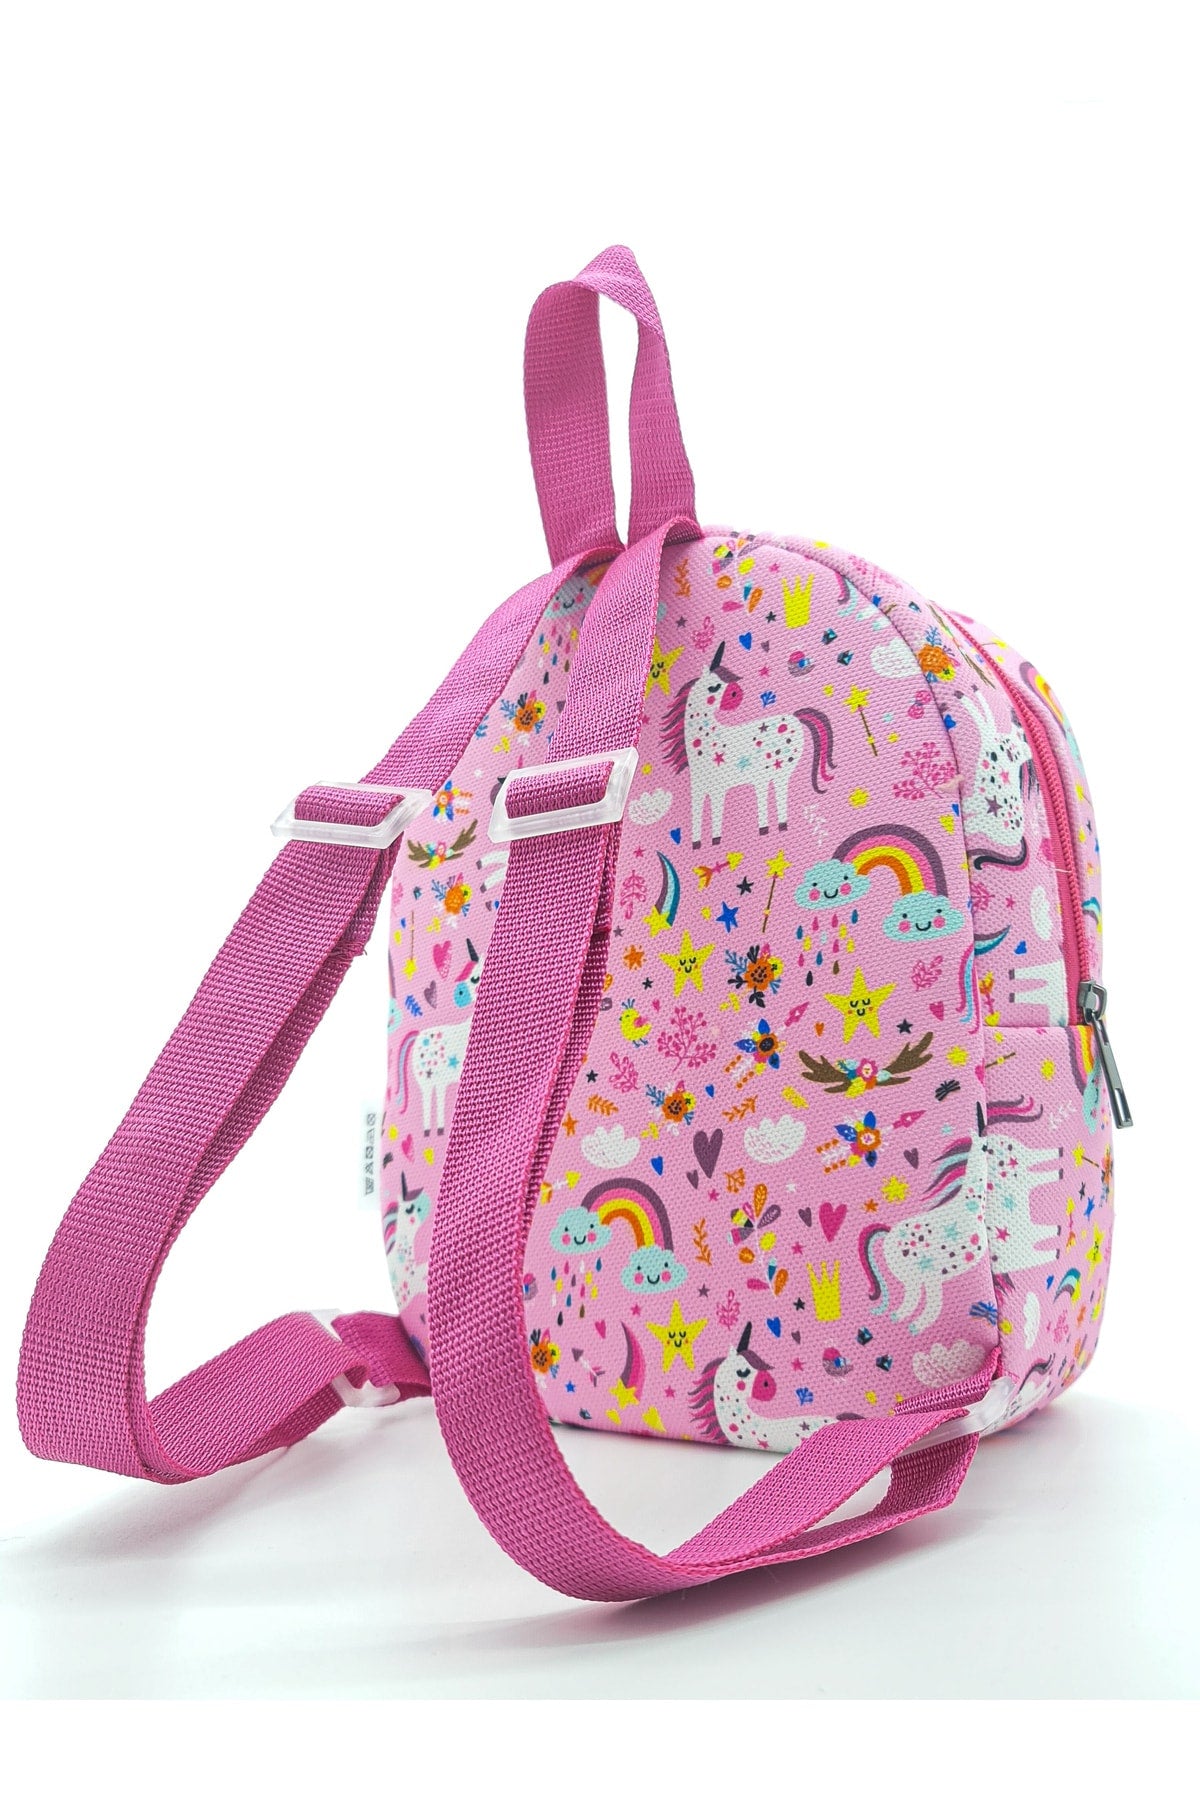 We Write Any Name You Want ] Sweet Unicorn 0-8 Years Old Kids Backpack, Kindergarten-Nursery Backpack